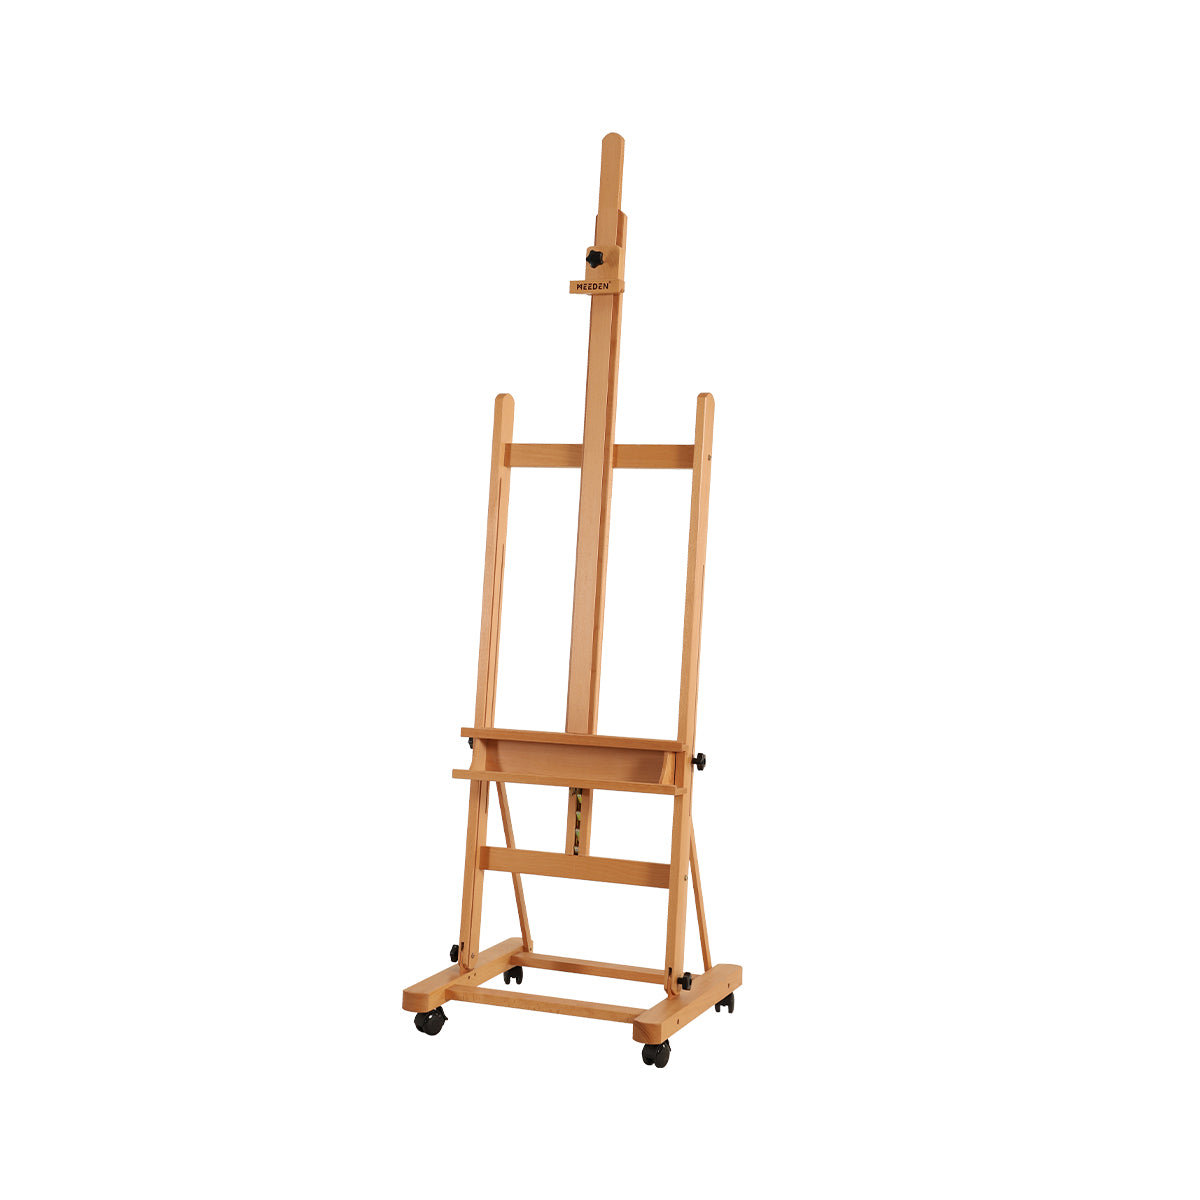 MEEDEN H-Frame Solid Beech Wood Artist Easel Stand-W02D